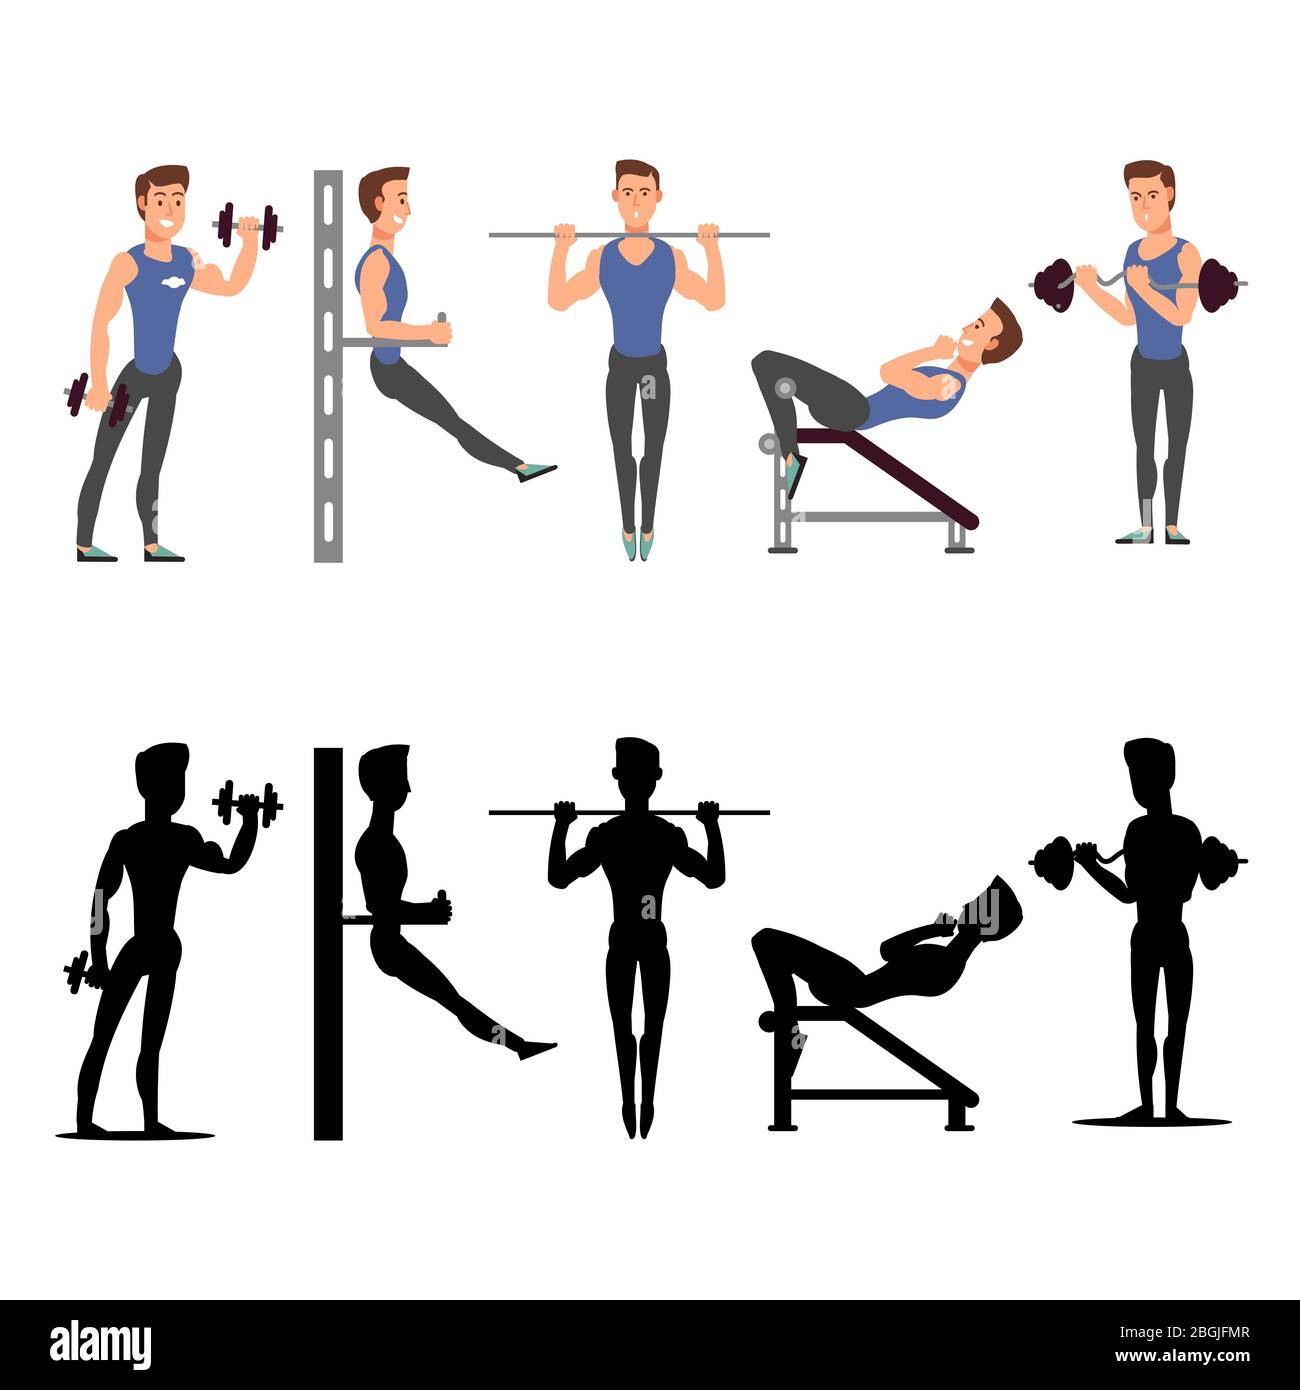 Sportmannfiguren. Vektor männliche Fitness Silhouetten isoliert auf weißem Hintergrund Illustration Stock Vektor